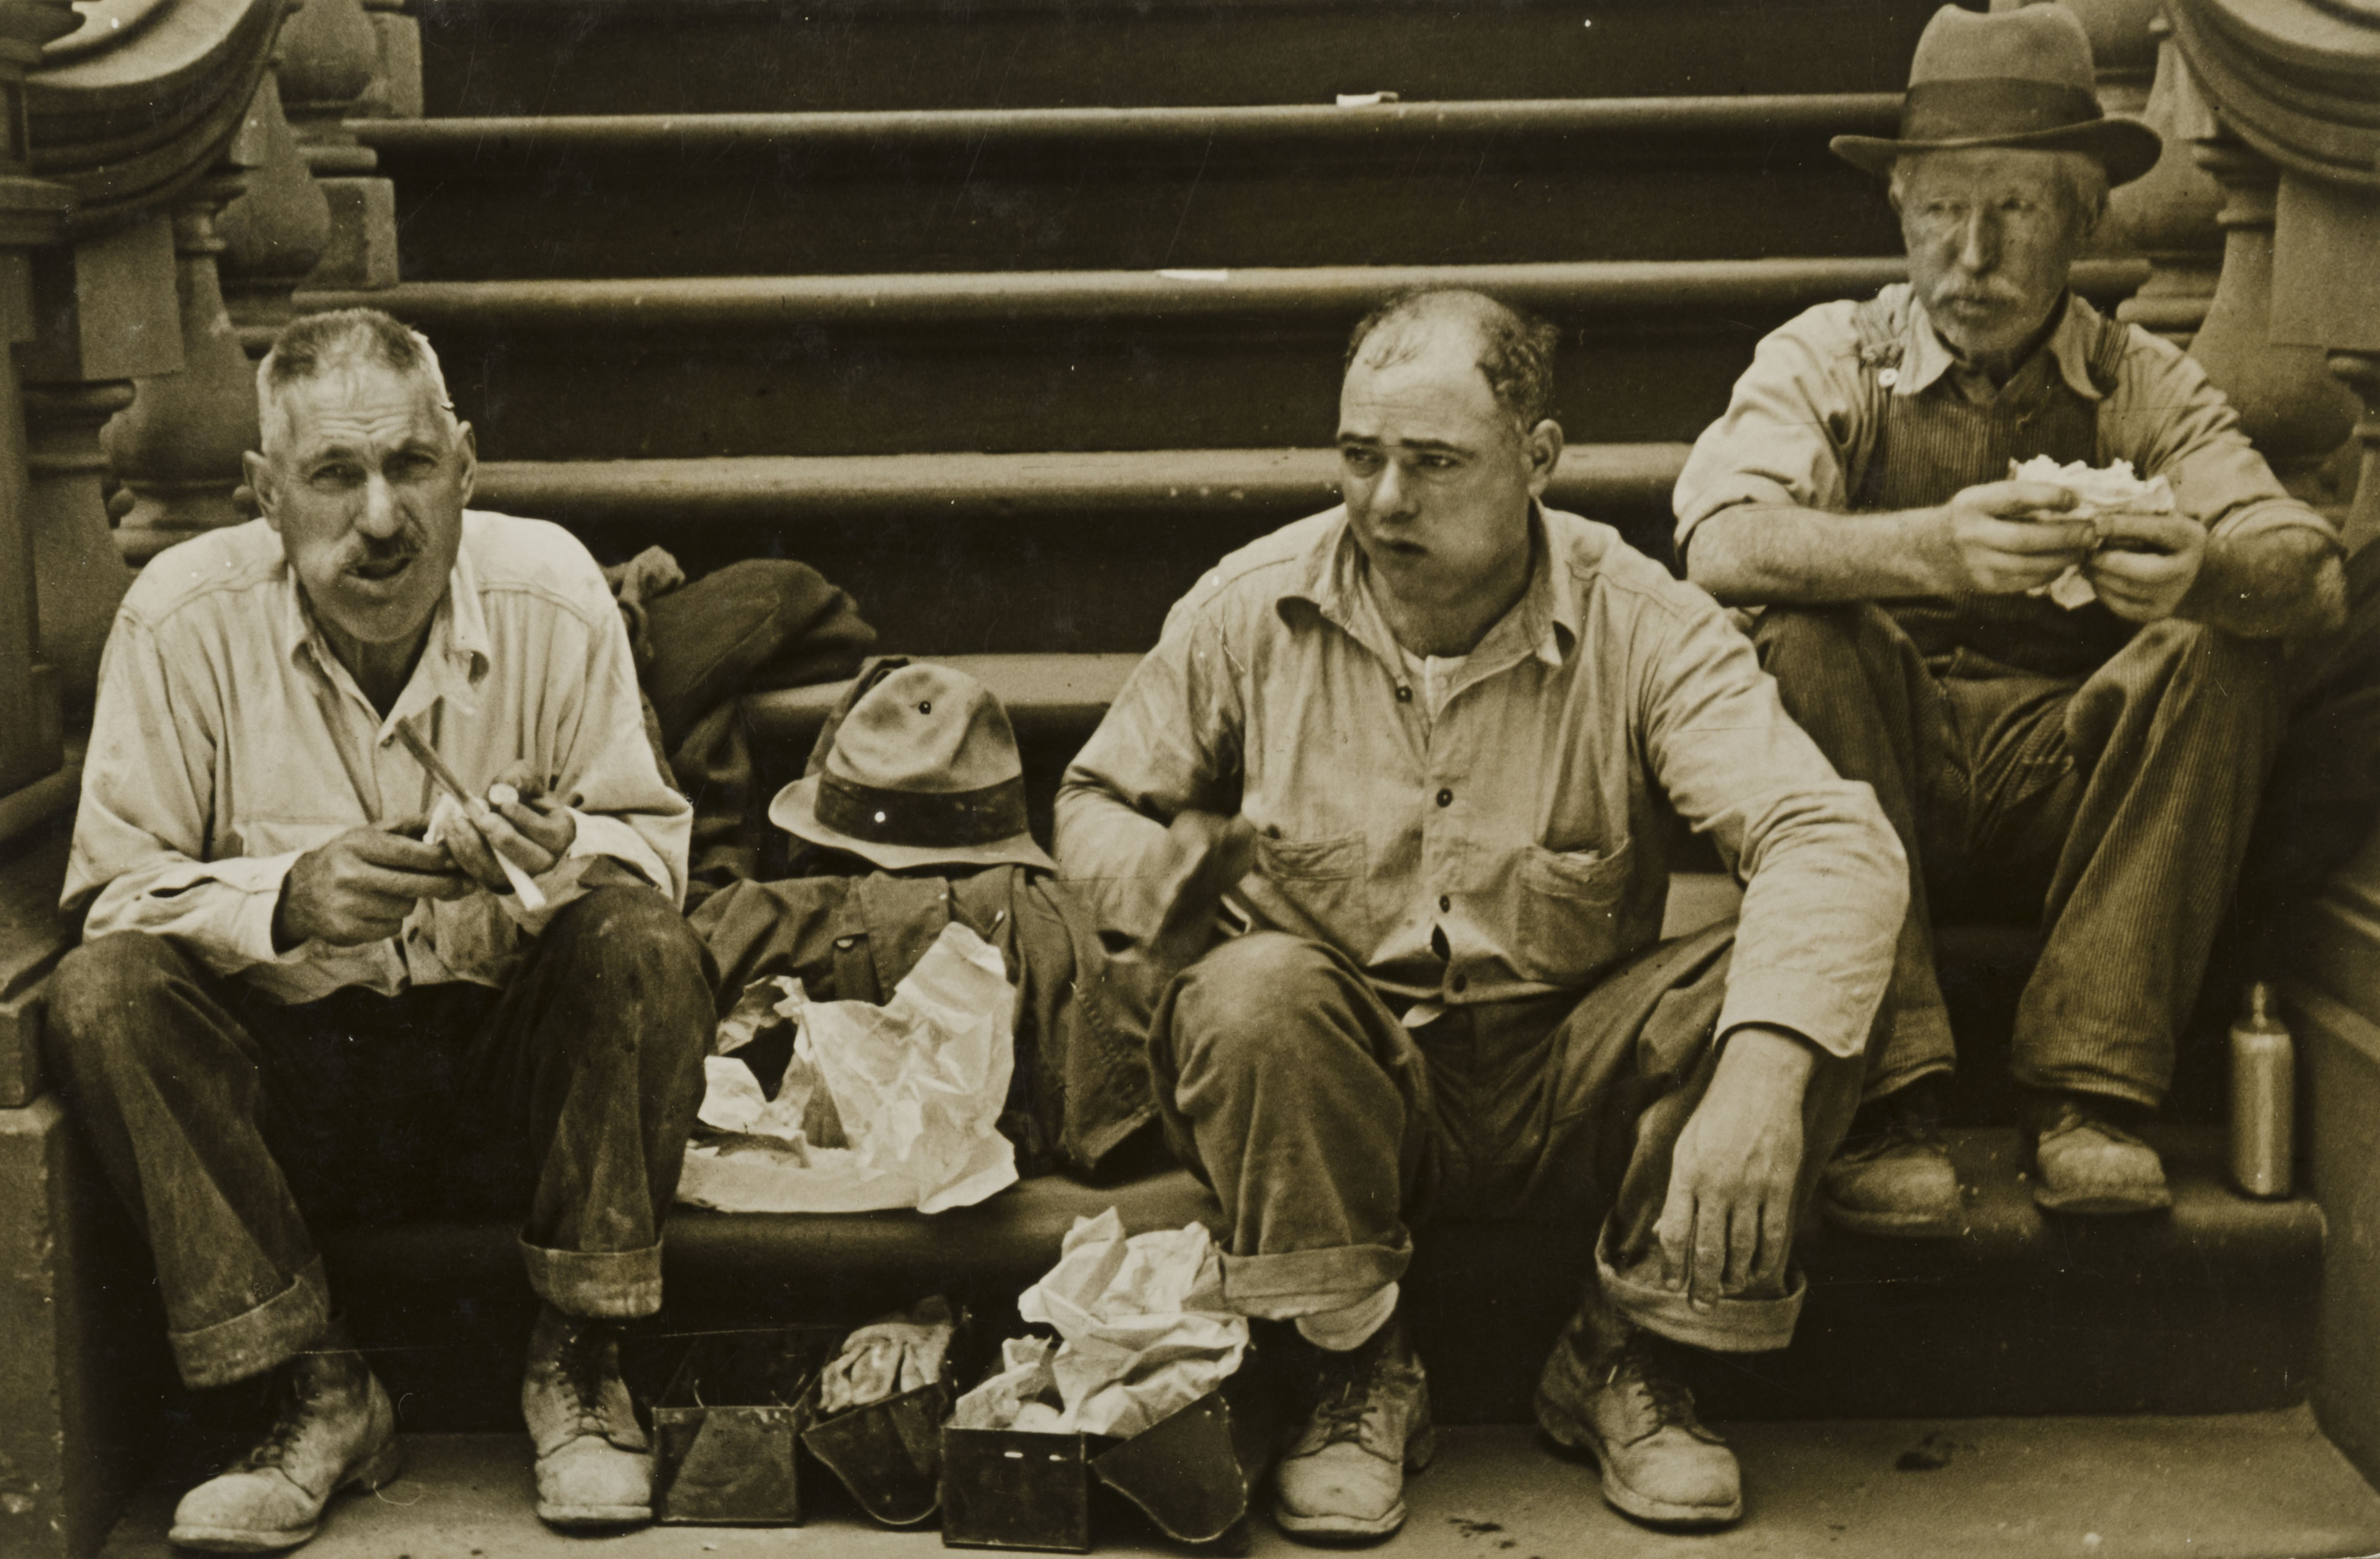 Men Eating Lunch on Steps, New York